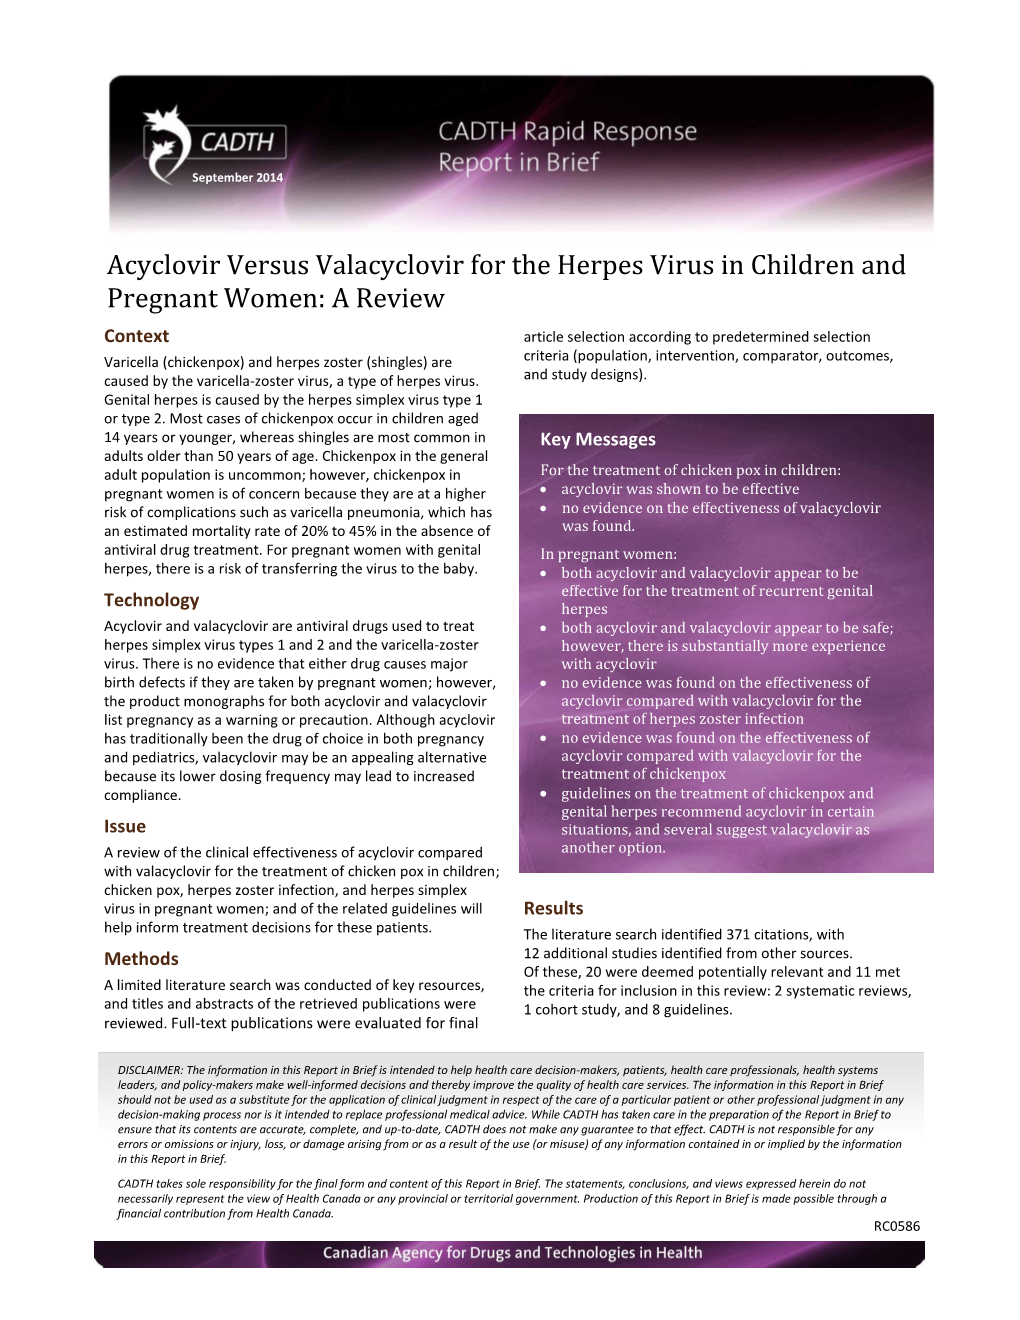 Acyclovir Versus Valacyclovir for Herpes Virus in Children